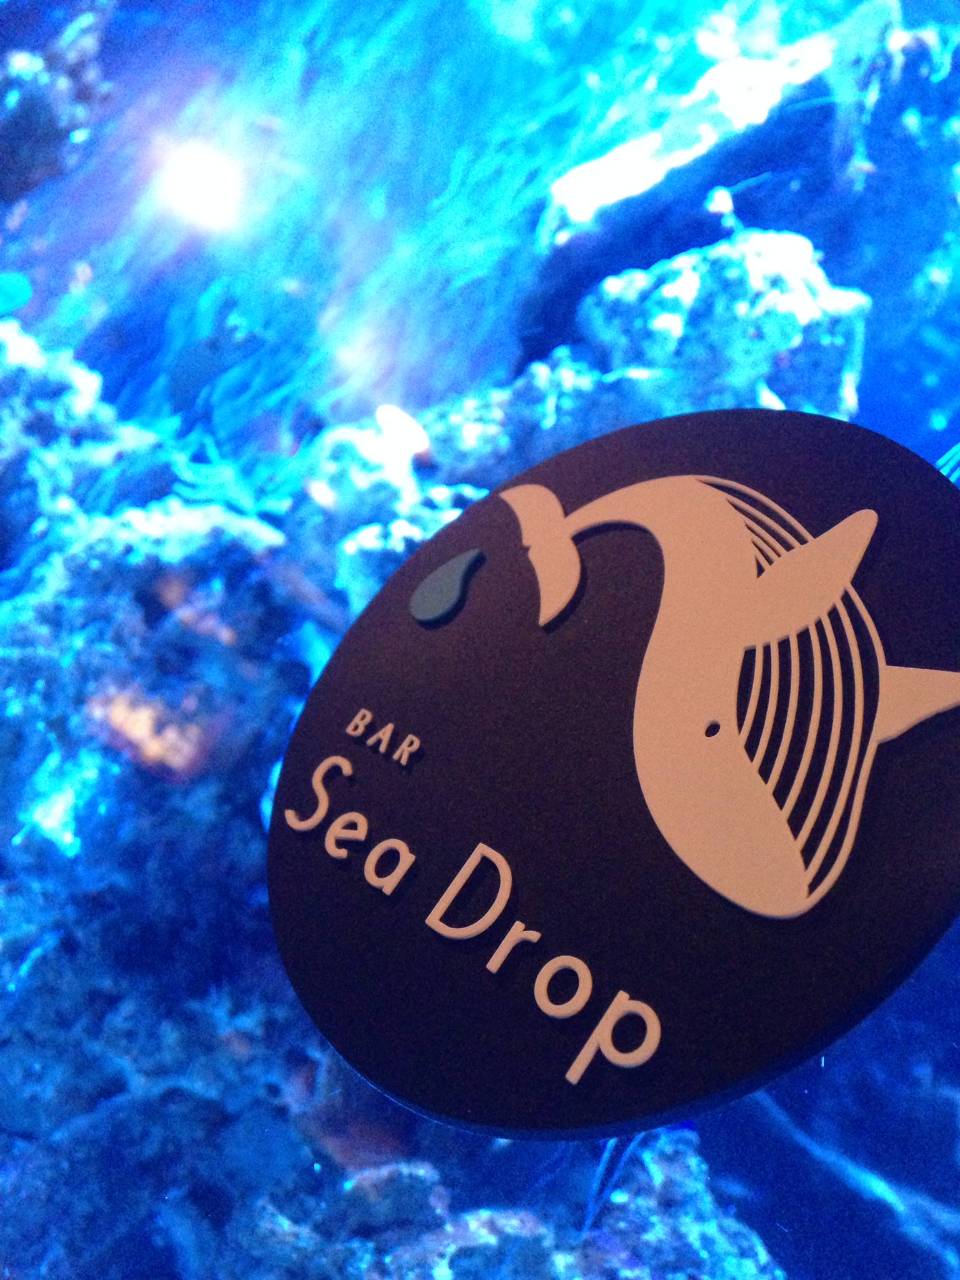 BAR Sea Drop